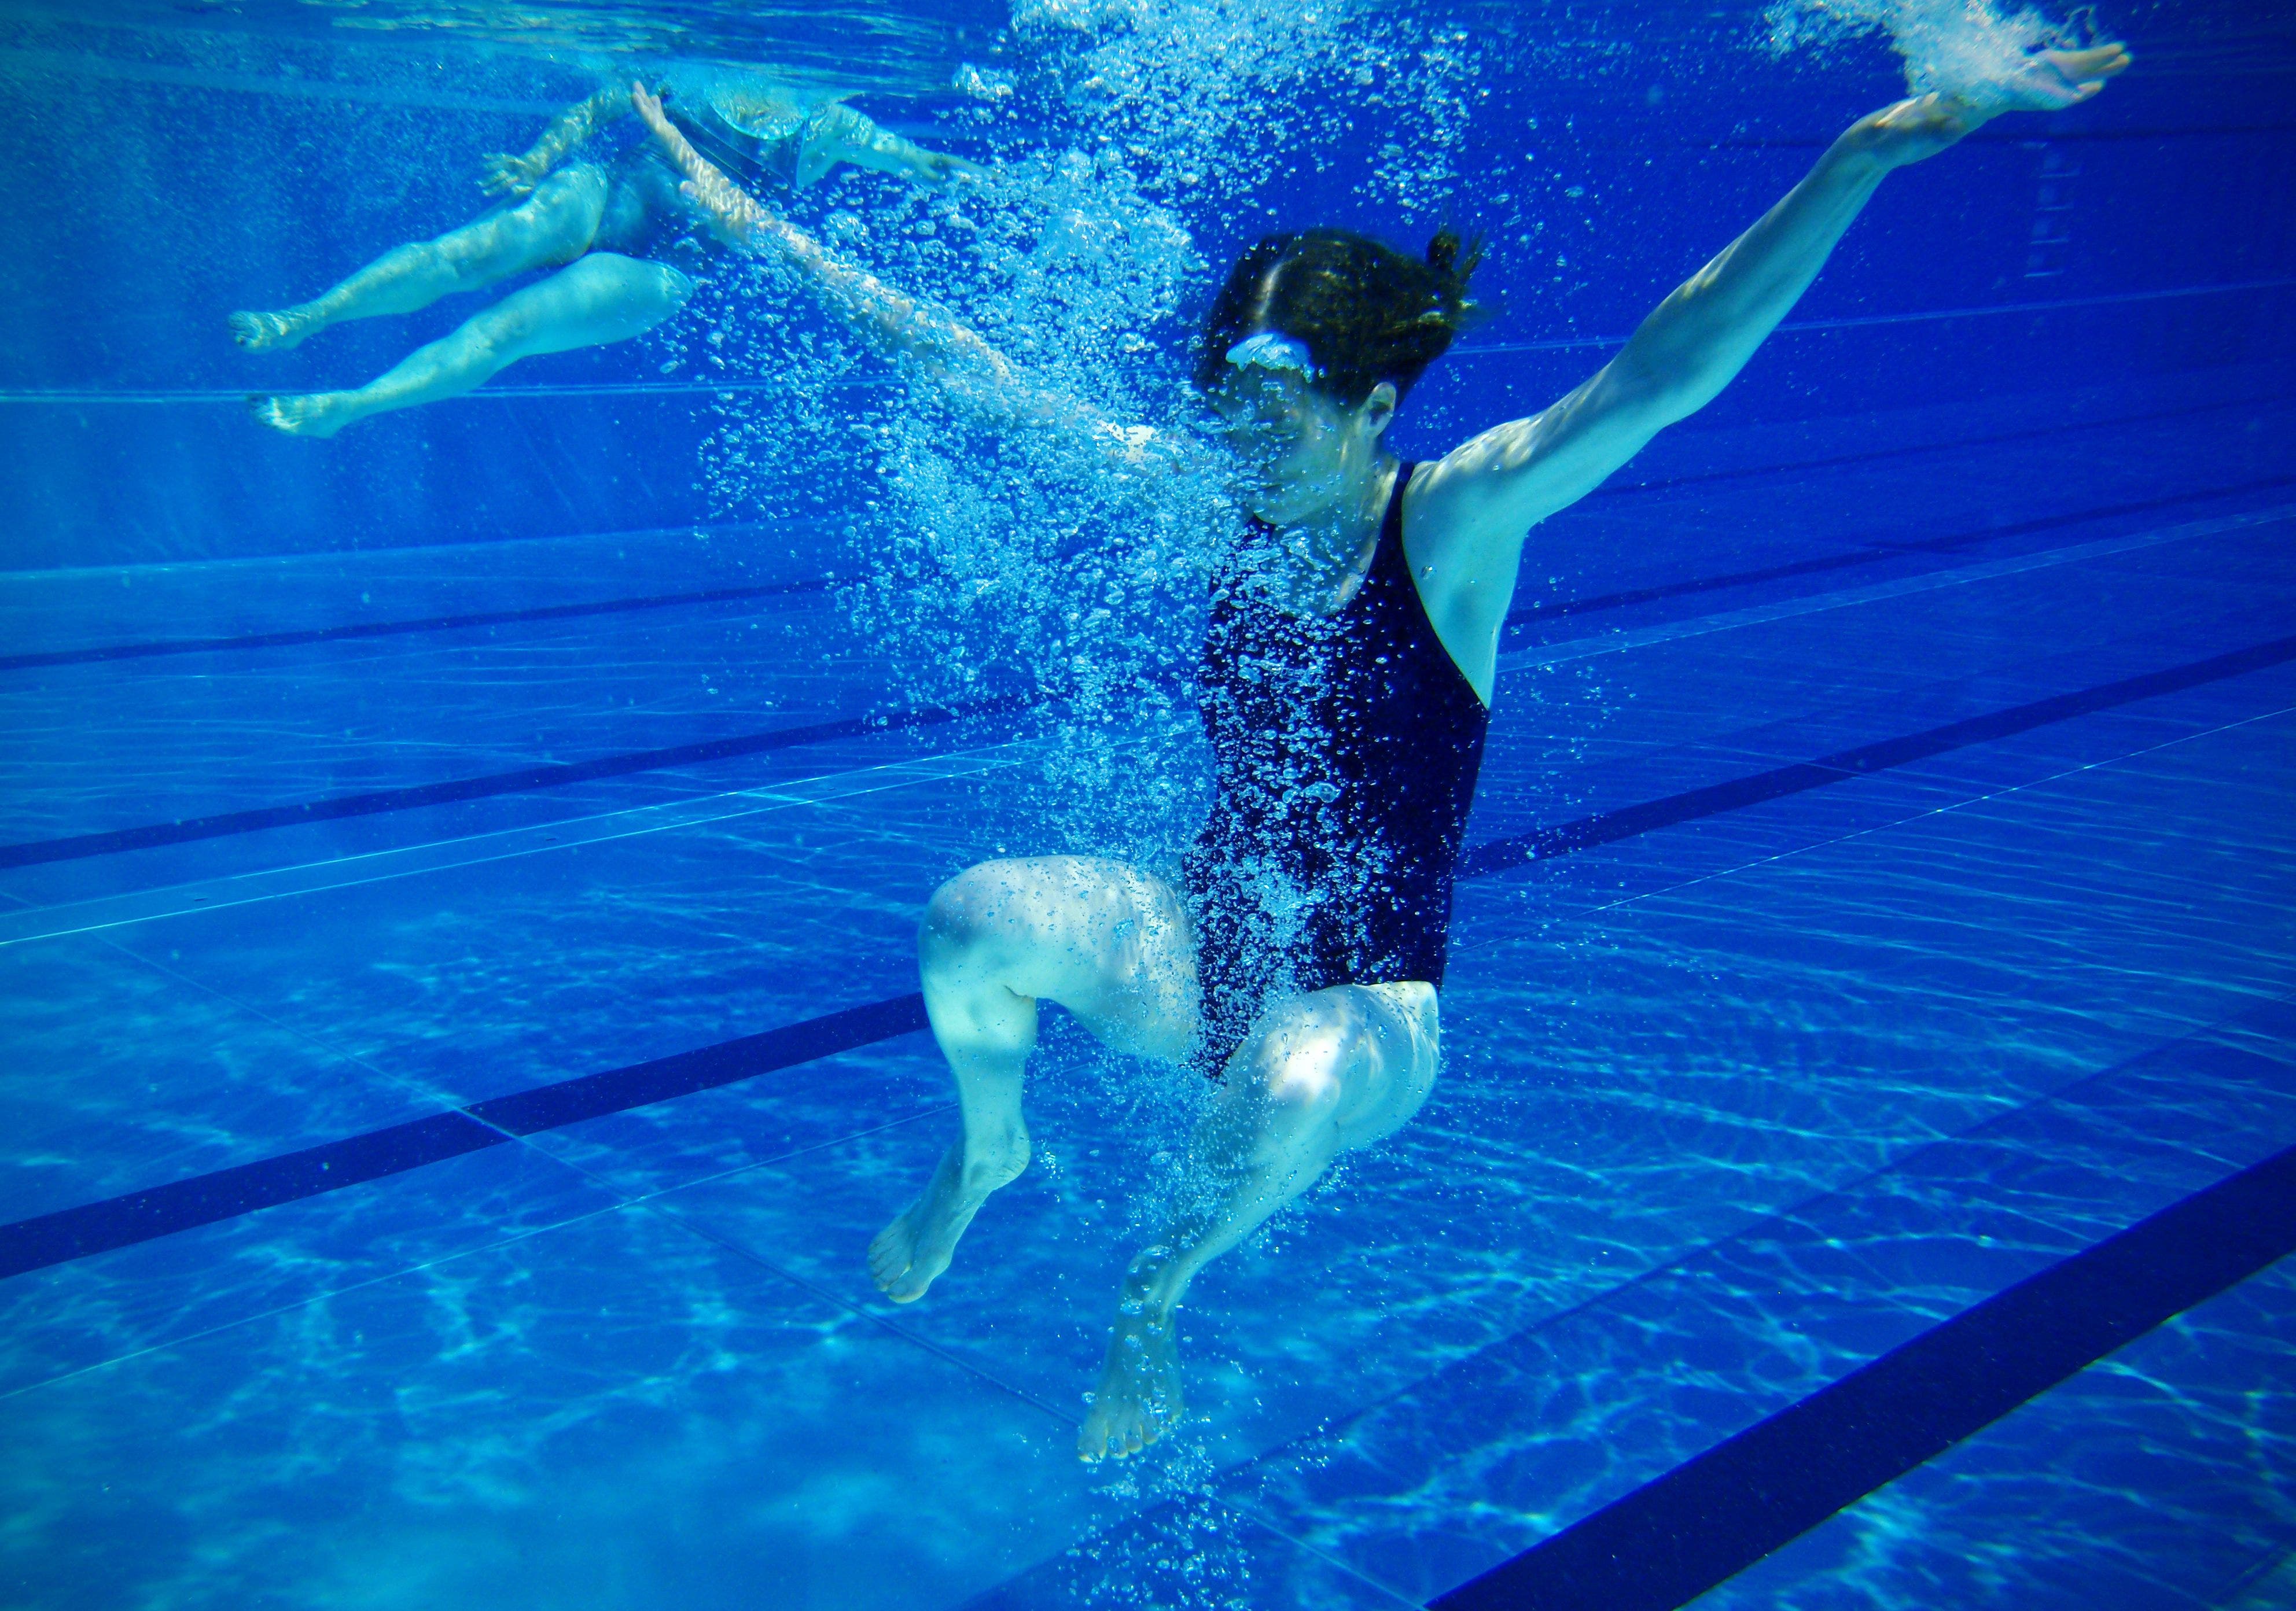 167 schwimmen nackt um die Wette | Tages-Anzeiger